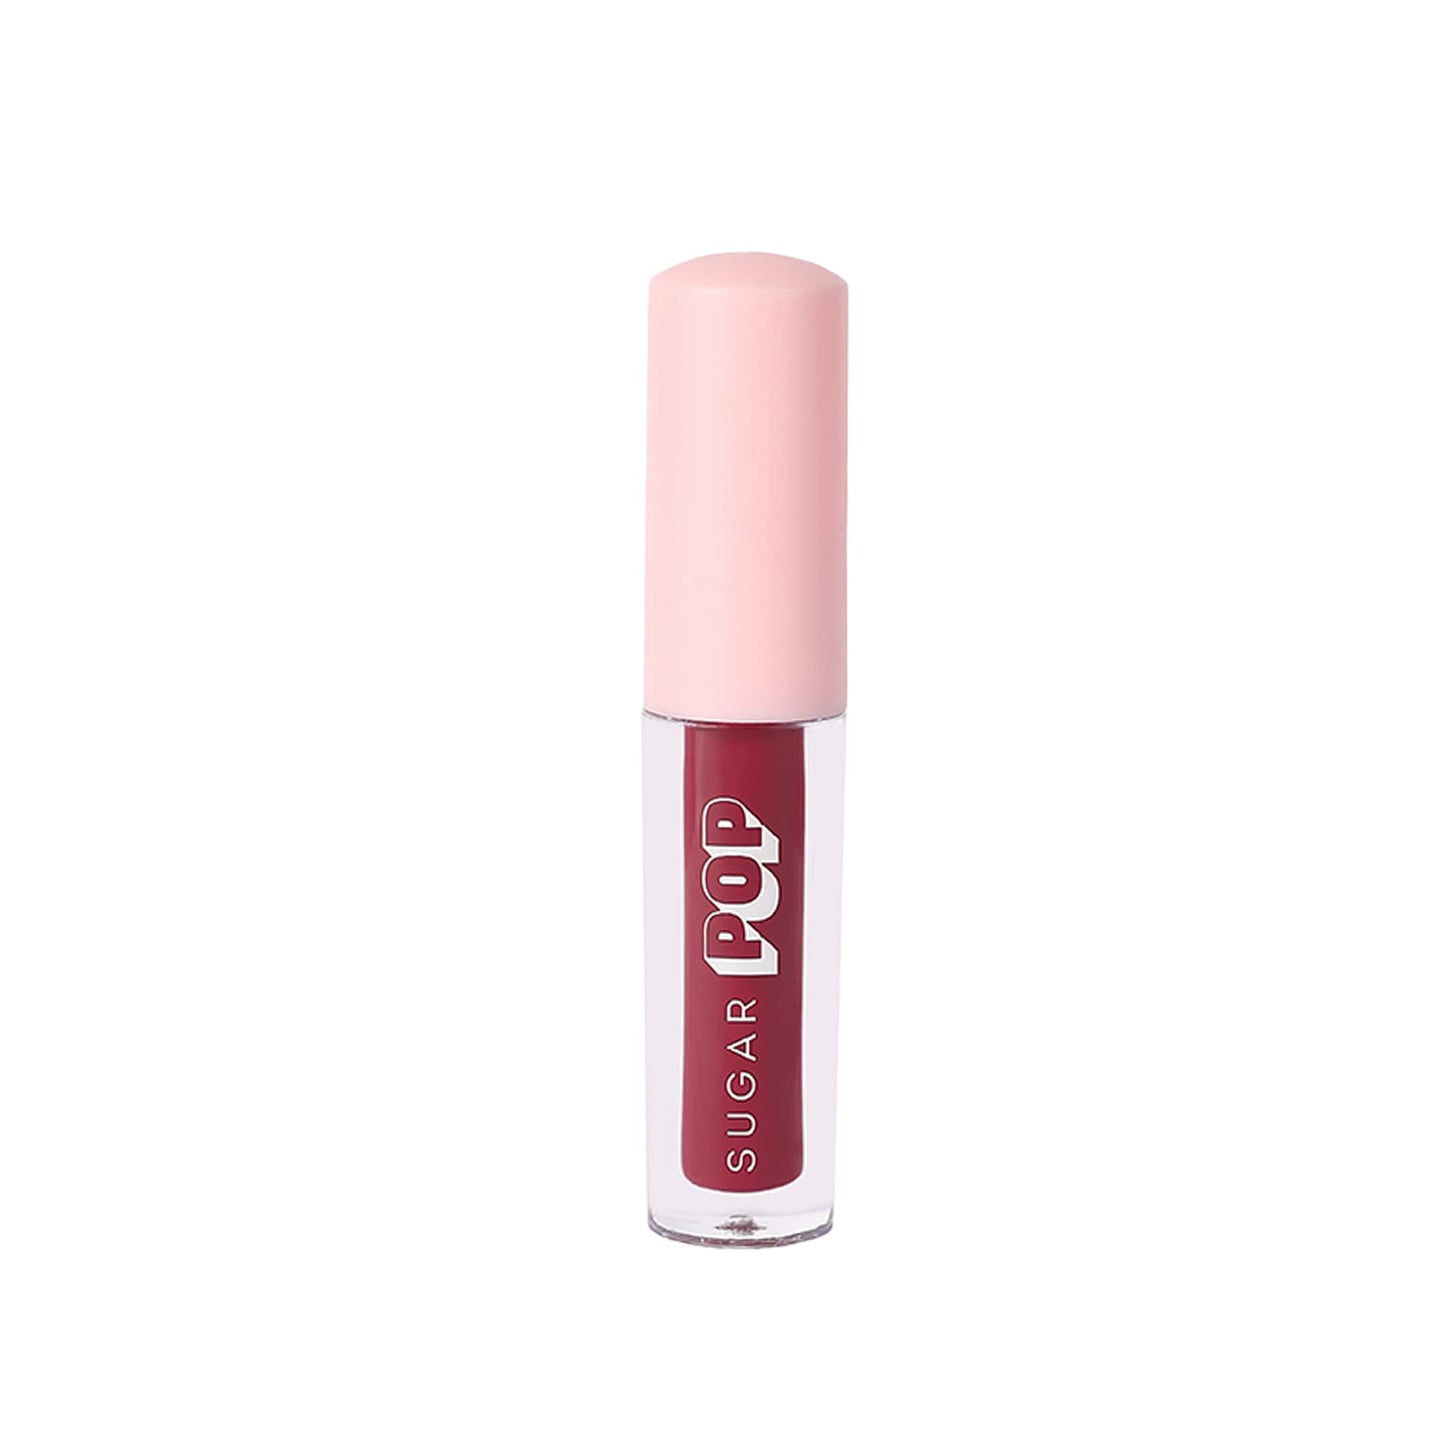 SUGAR POP Matte Lipcolour - 04 Raspberry + Nourishing Lip Balm - 02 Cherry Lip Kit4.5gms + 6m